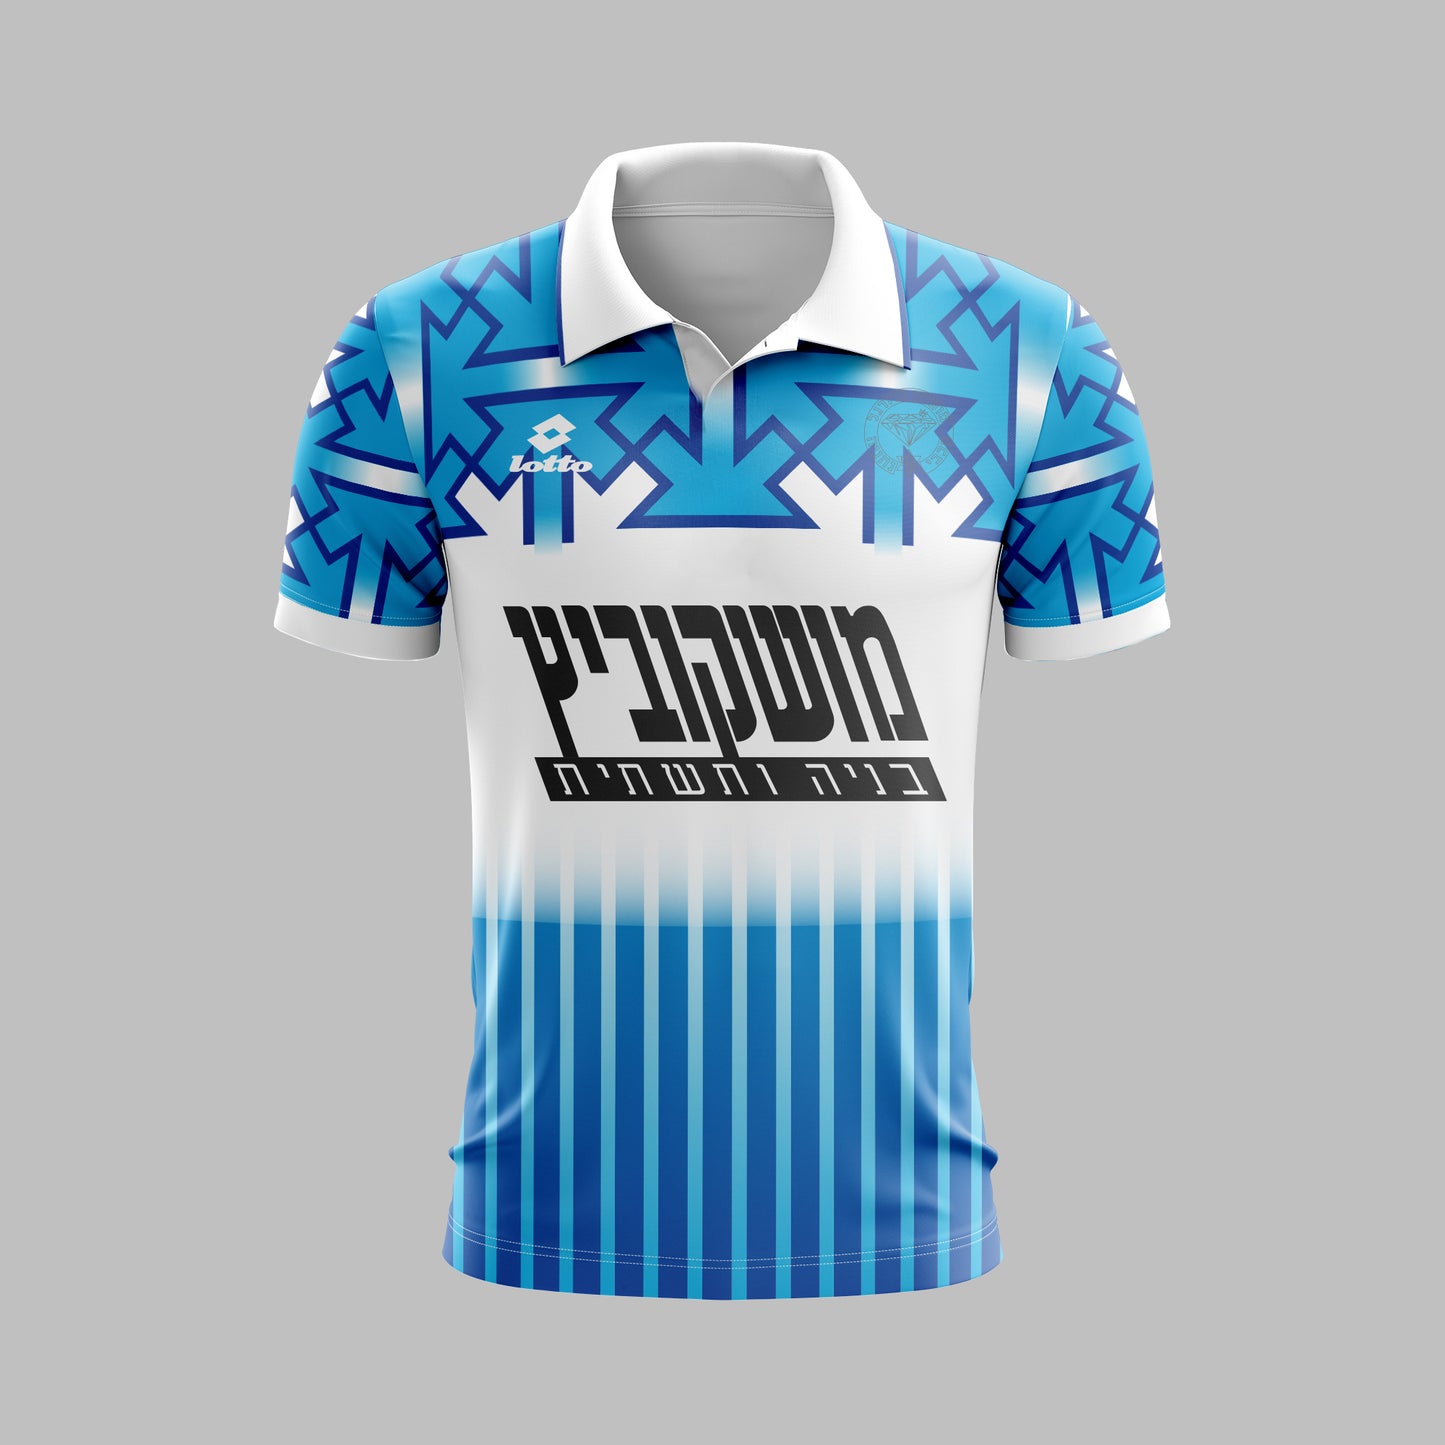 Maccabi Netanya 1992-1993 Away - Retro Jerseys - Retro Jerseys